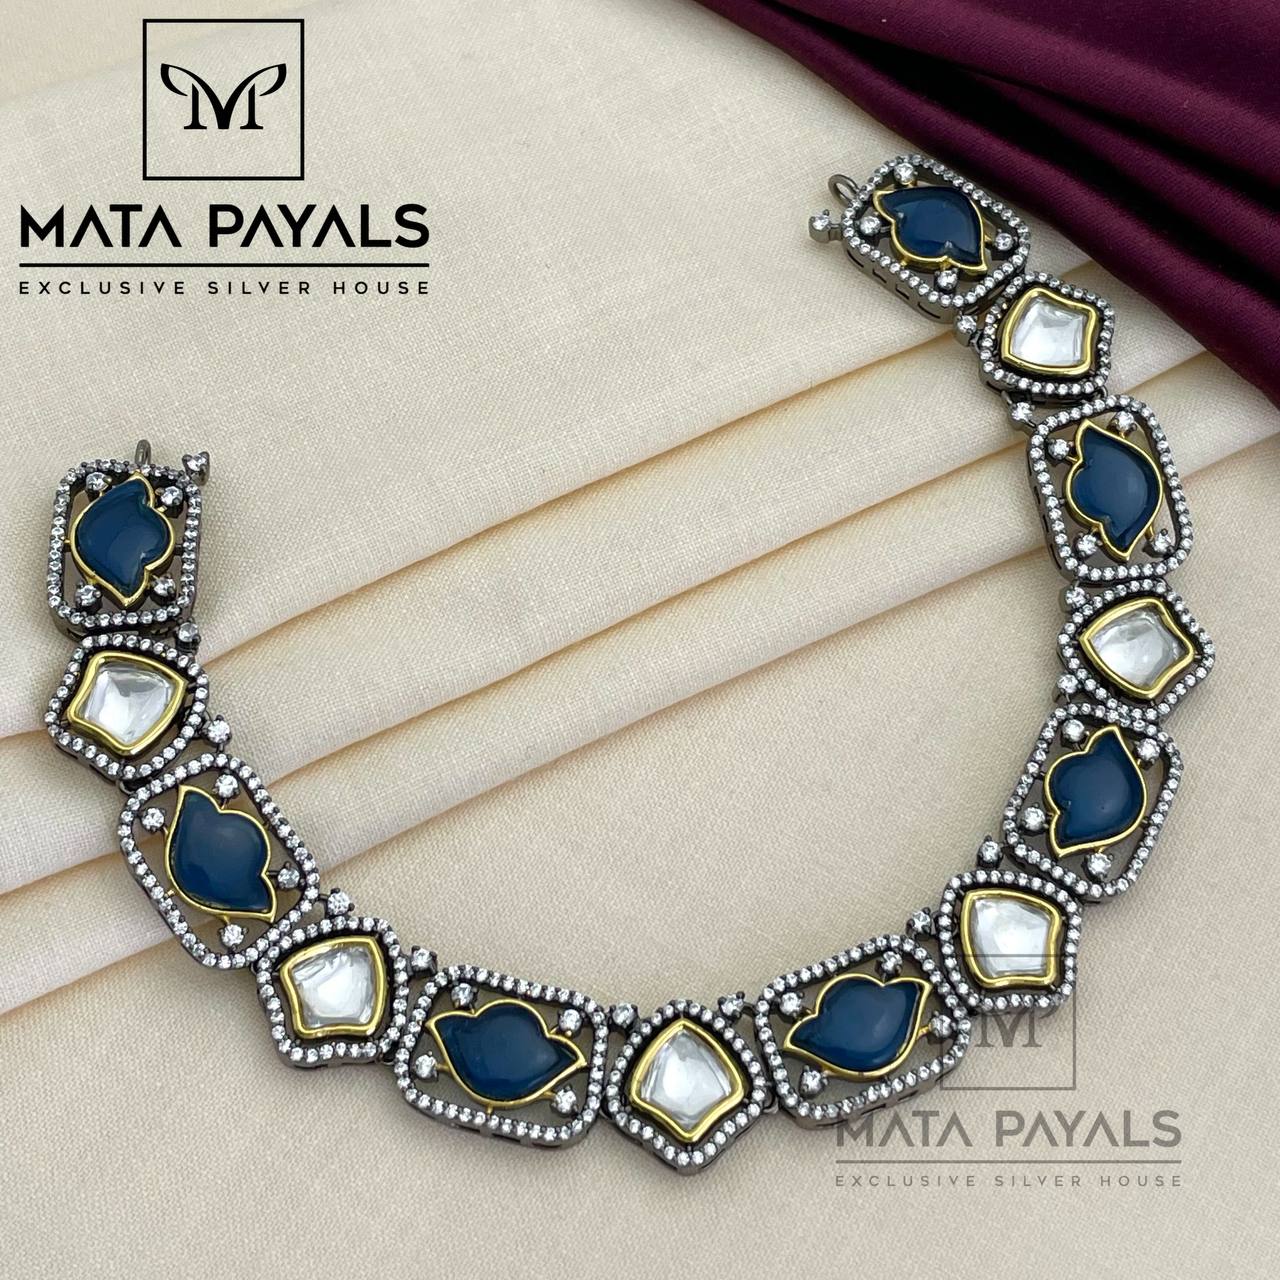 Mata Payals Necklace